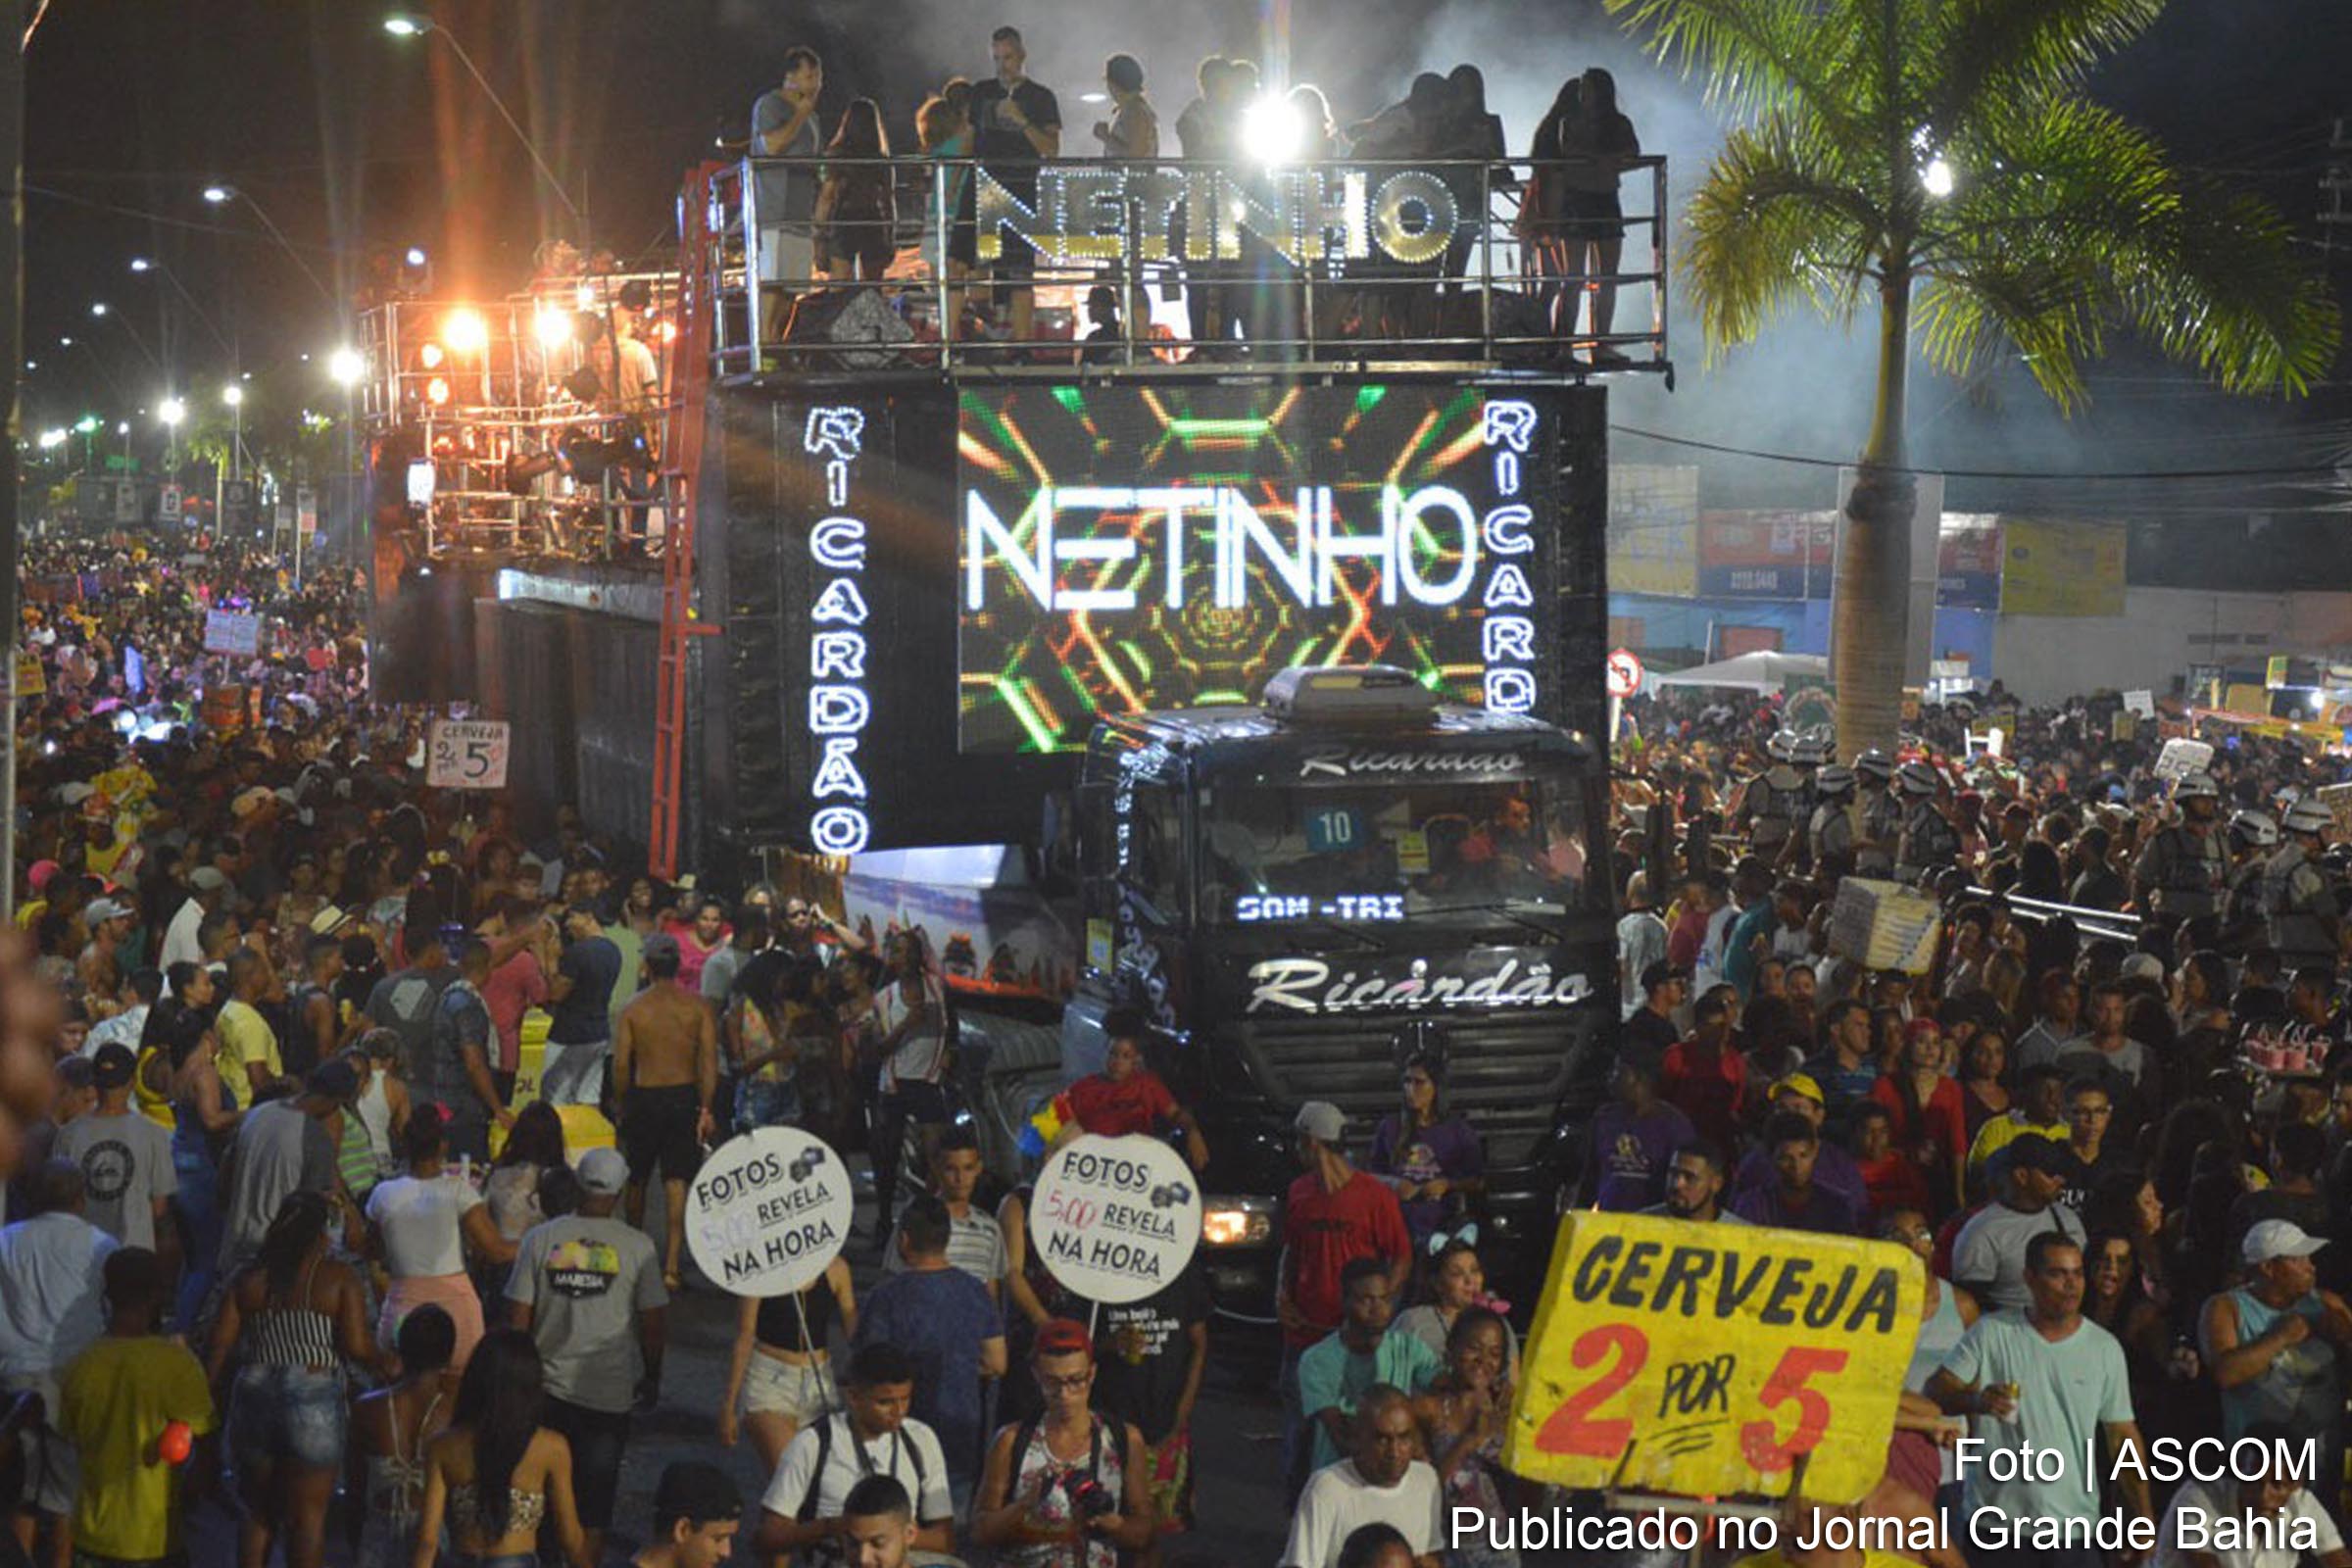 Netinho apresenta show na Micareta 2019 de Feira de Santana.